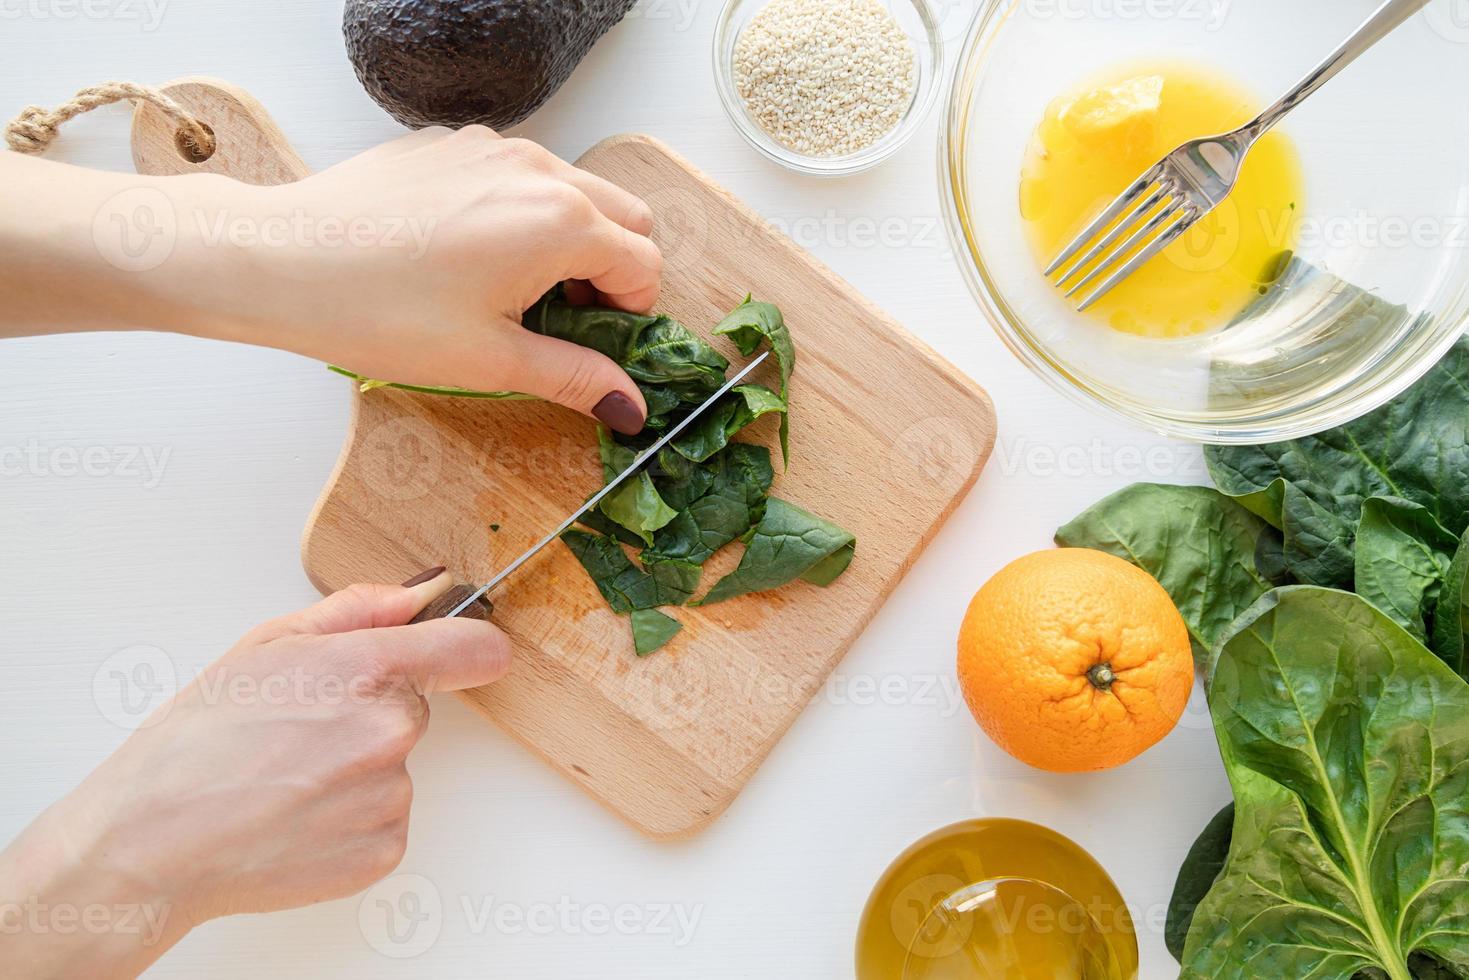 stap voor stap bereiding van spinazie, avocado en sinaasappelsalade. stap 4 - spinazie snijden foto